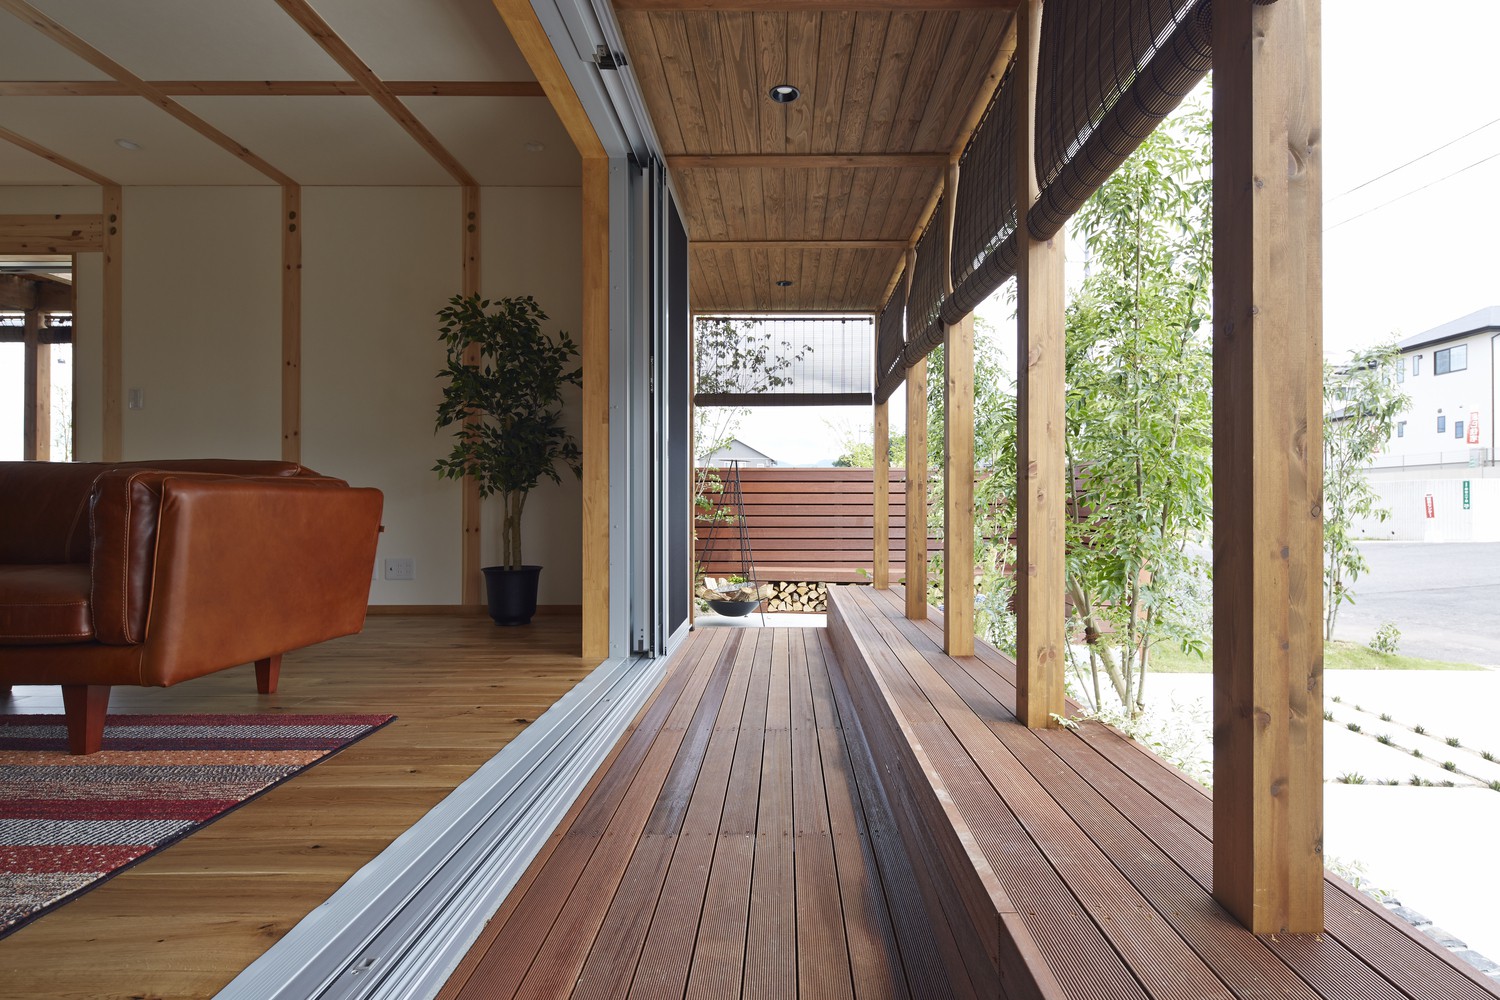 Hình ảnh hiên gỗ thoáng rộng, tạo lớp cách nhiệt hiệu quả, giúp không gian nhà luôn thoáng mát, không bị nắng chiếu trực tiếp.